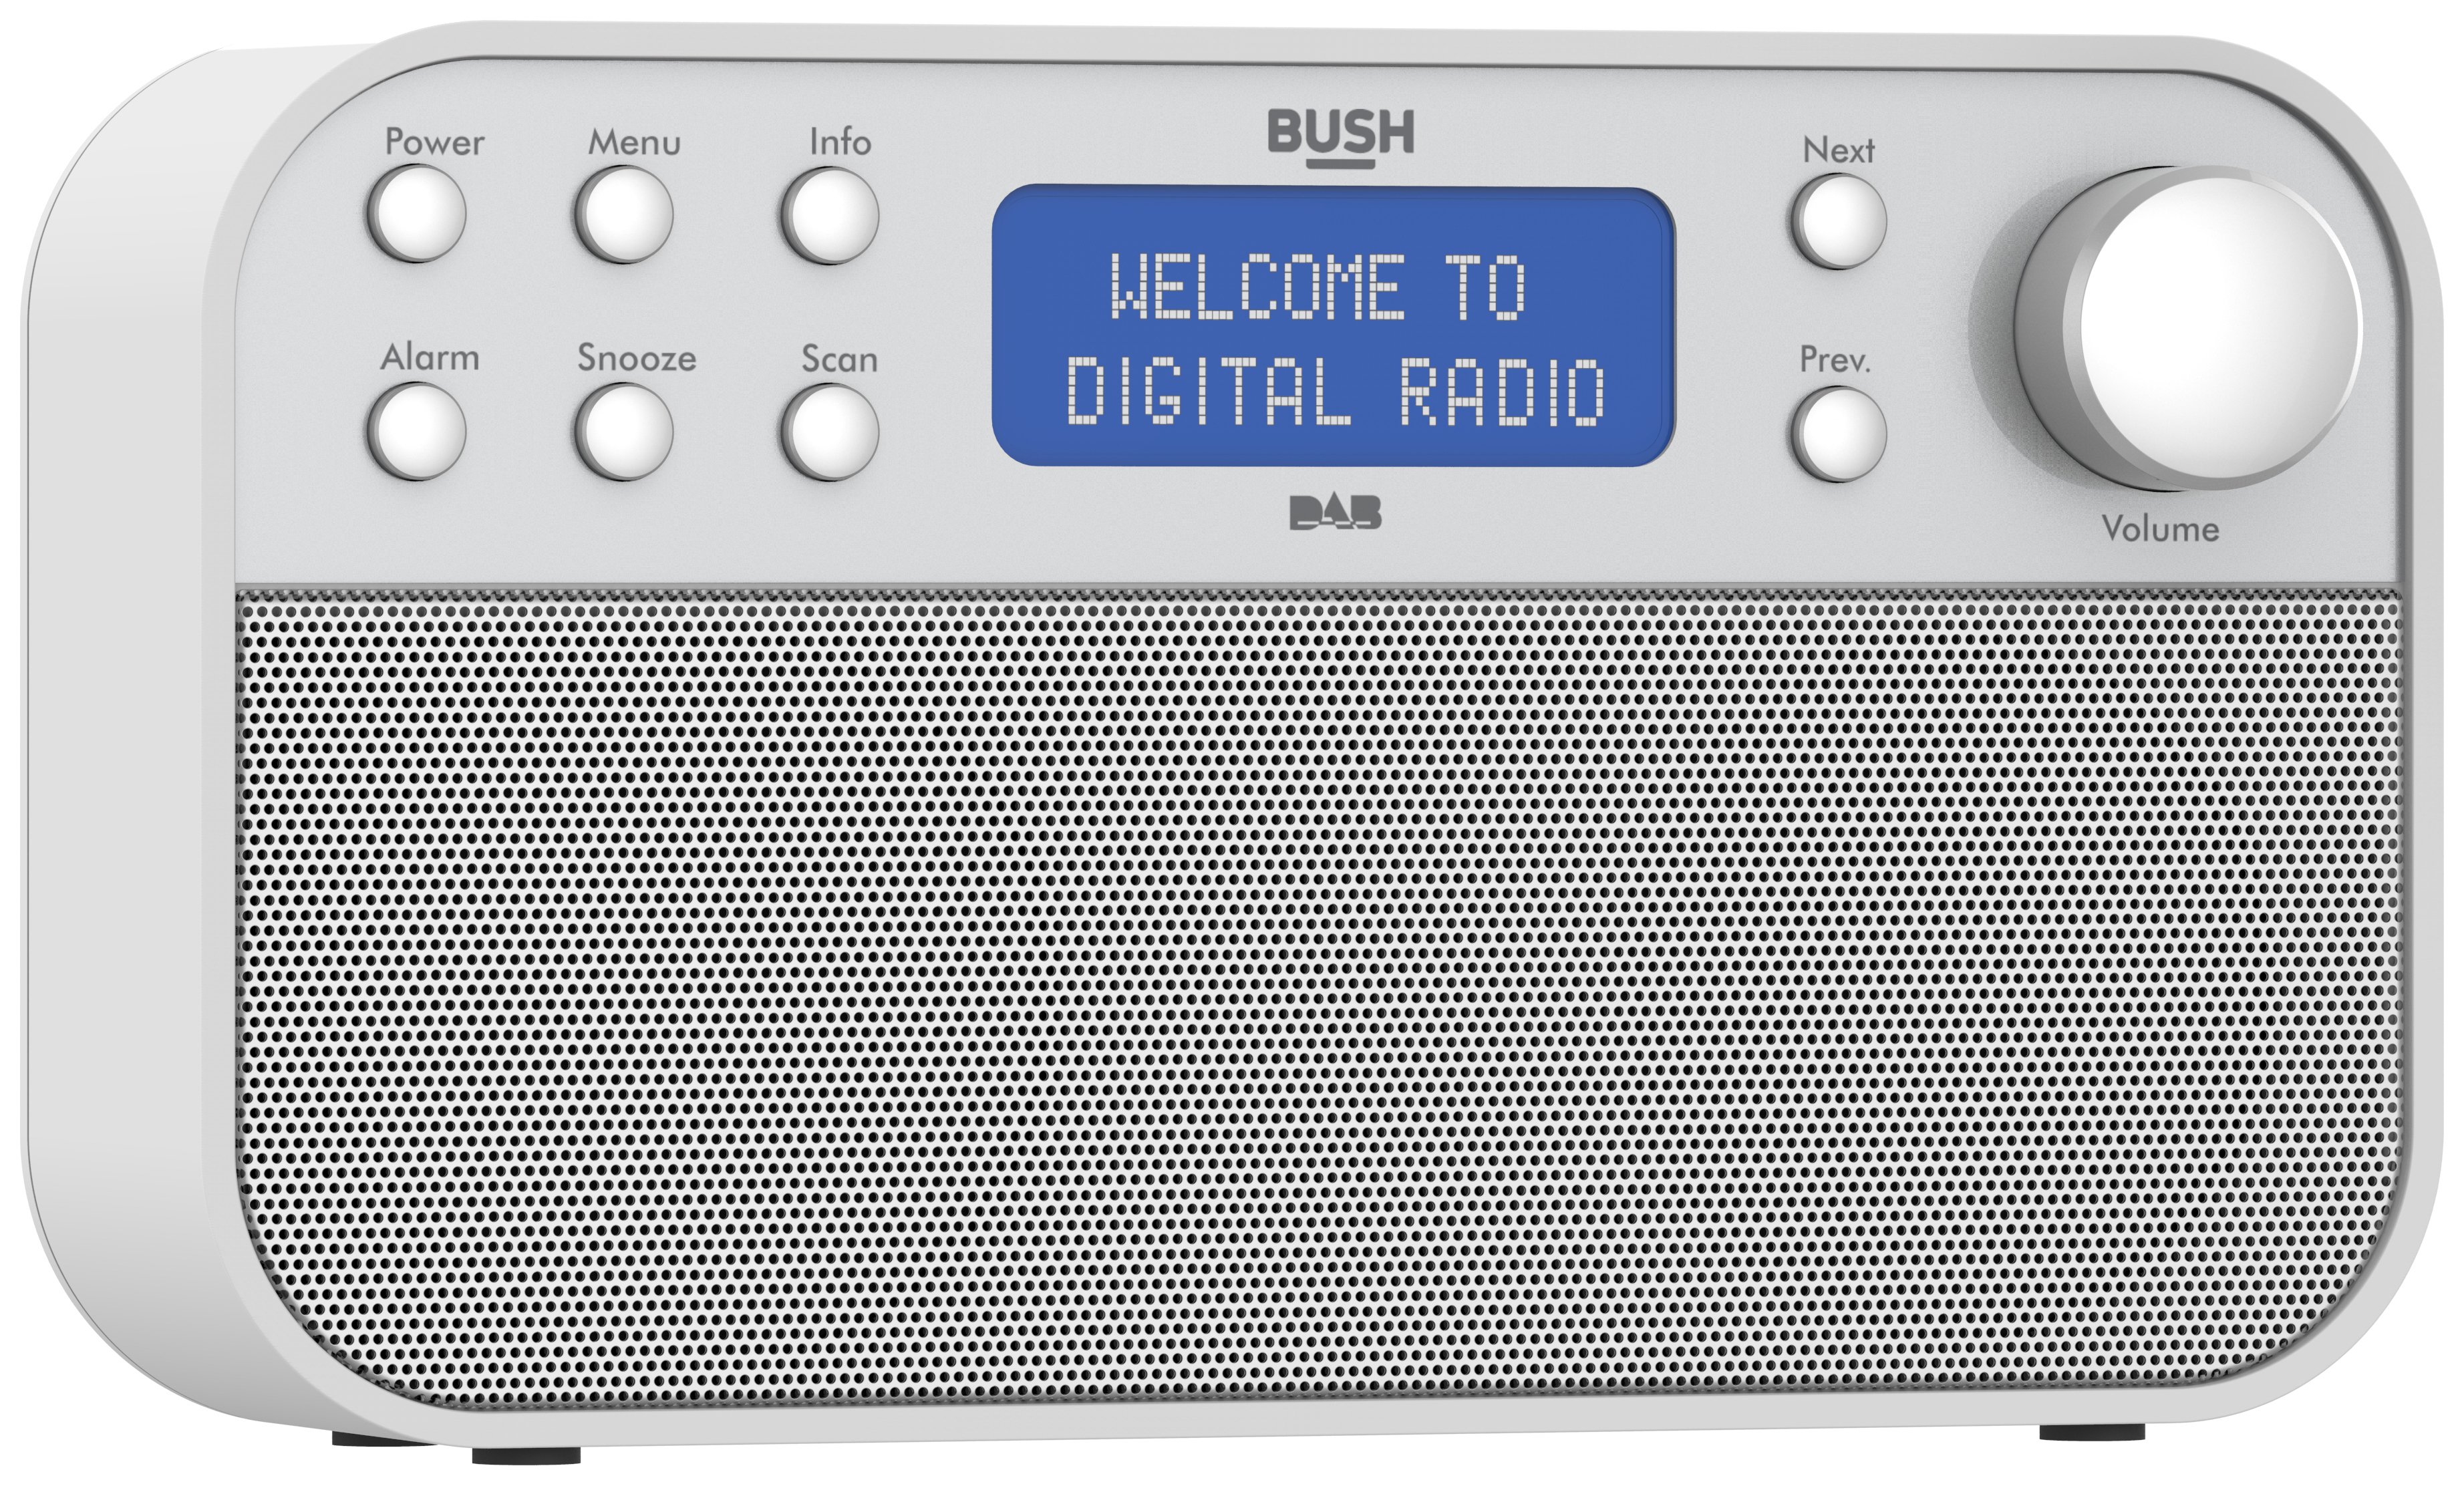 Bush DAB Radio Review